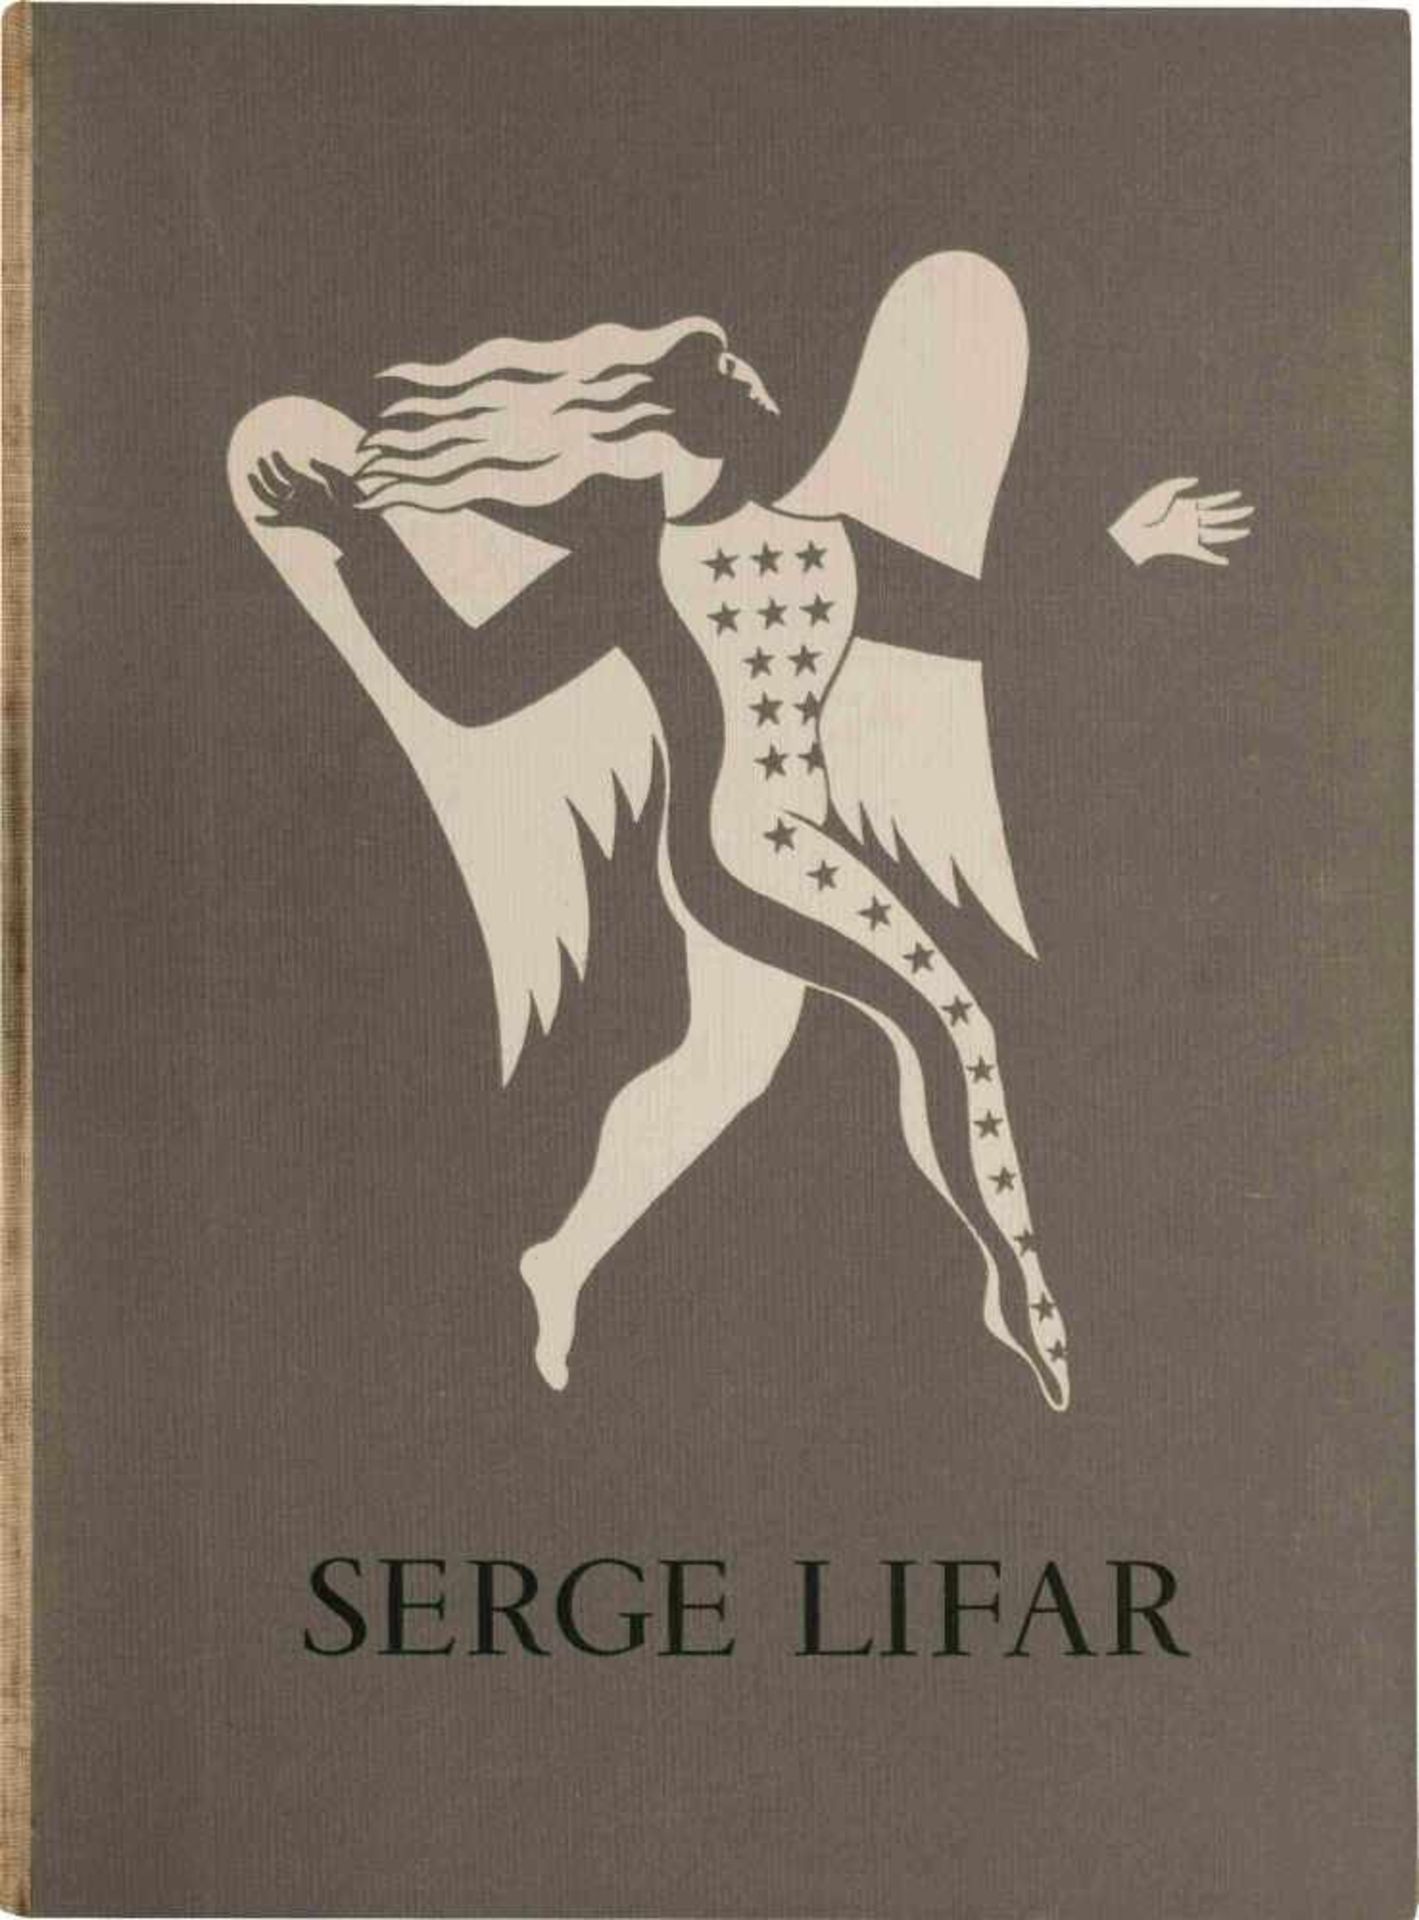 [BALLETS RUSSES, SERGE LIFAR, VALERY, COCTEAU, PAGEOT-ROUSSEAUX] Serge Lifar a l’Opéra. Defini par